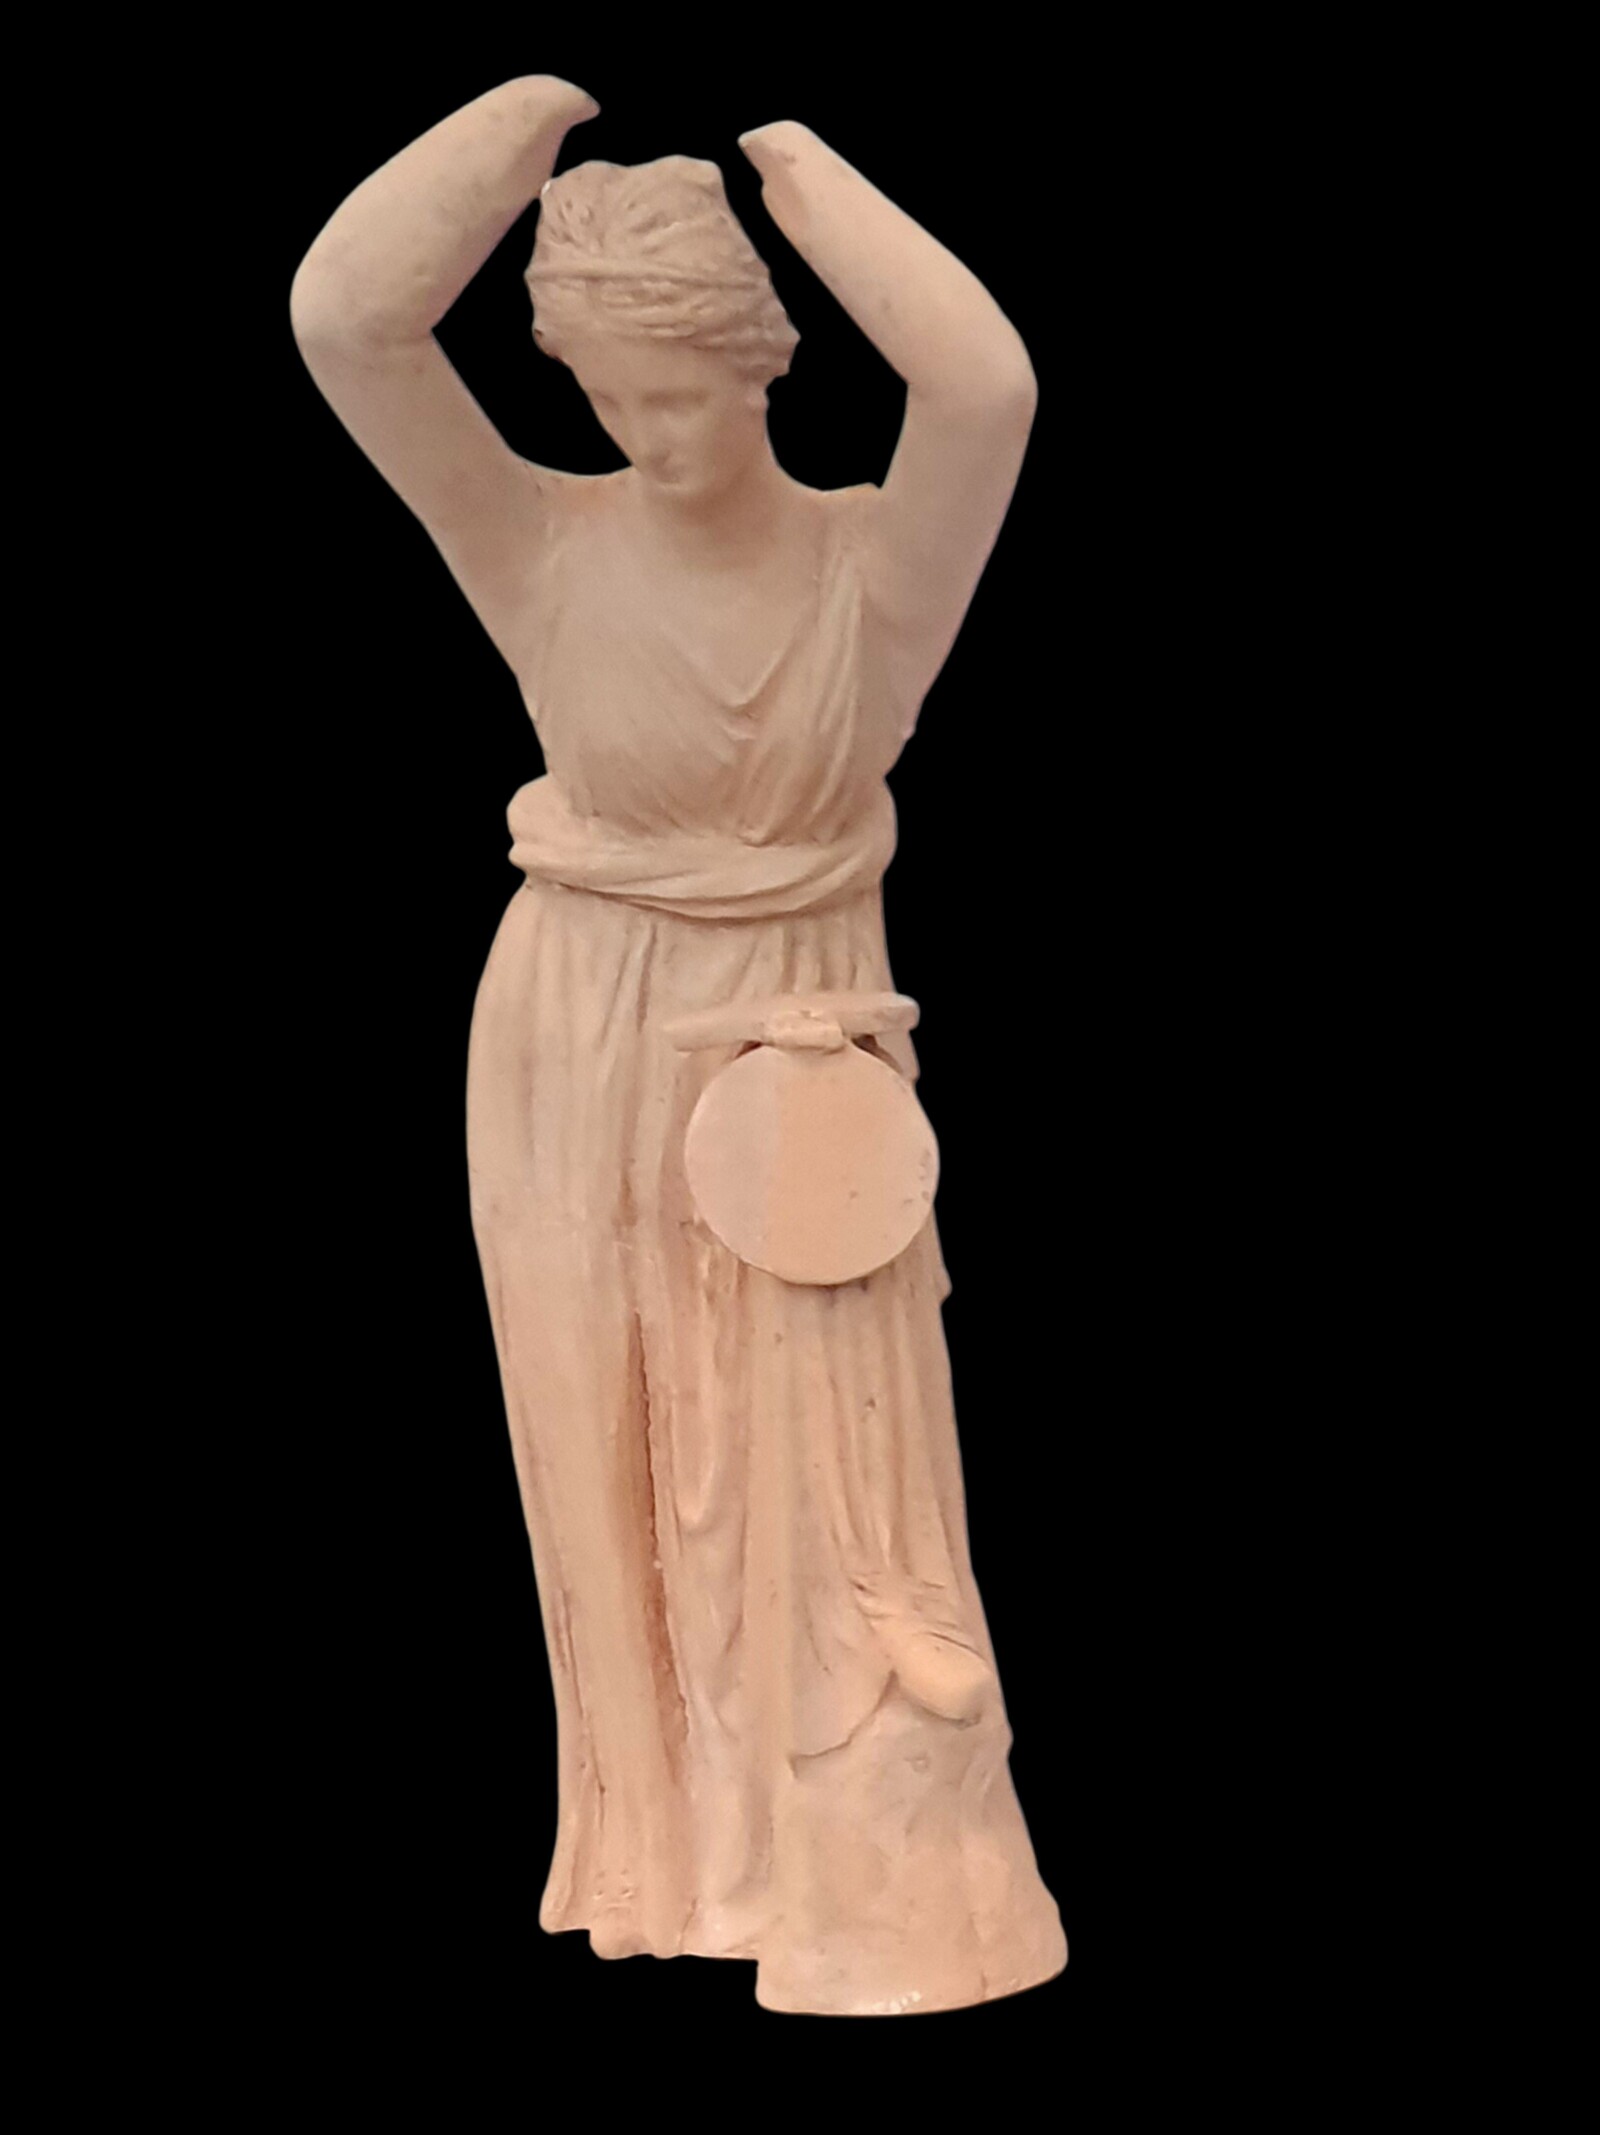 צלמית הלניסטית של אישה המתבוננת במראה מתקפלת. מוצגת במוזיאון המטרופוליטן בניו יורק (צילום: ליאת עוז, רשות העתיקות)